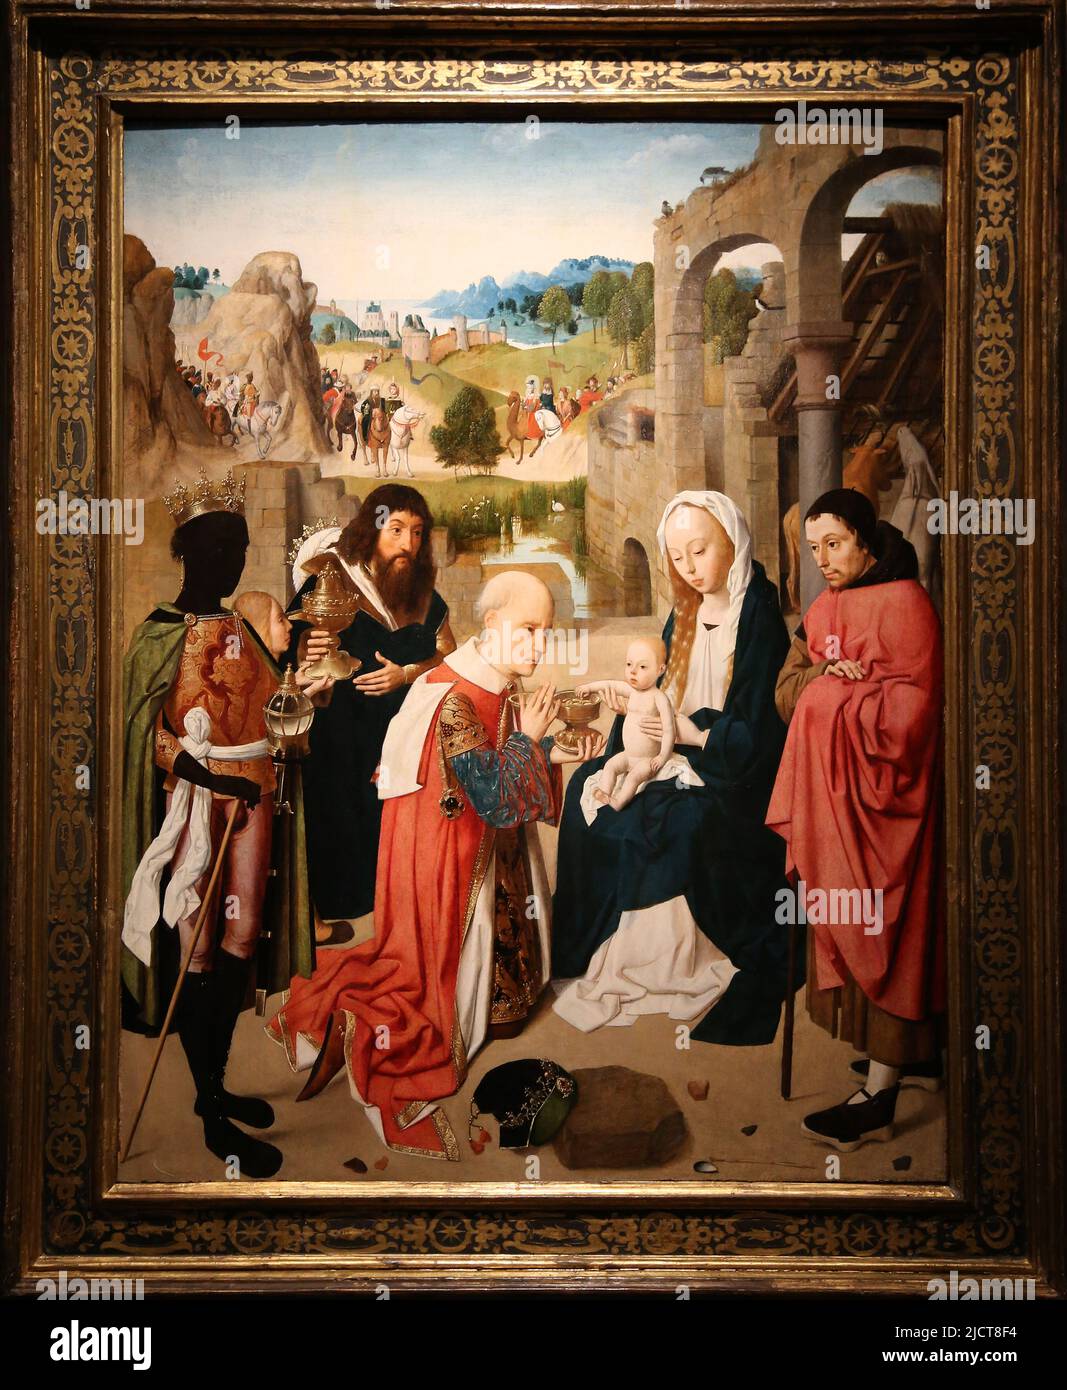 L'adoration des Mages, par Geertgen tot Sint-Jans (c. 1460-c.1490). Haarlem, c. 1480-1485. Huile sur le panneau. Rijksmuseum. Amsterdam. Pays-Bas Banque D'Images